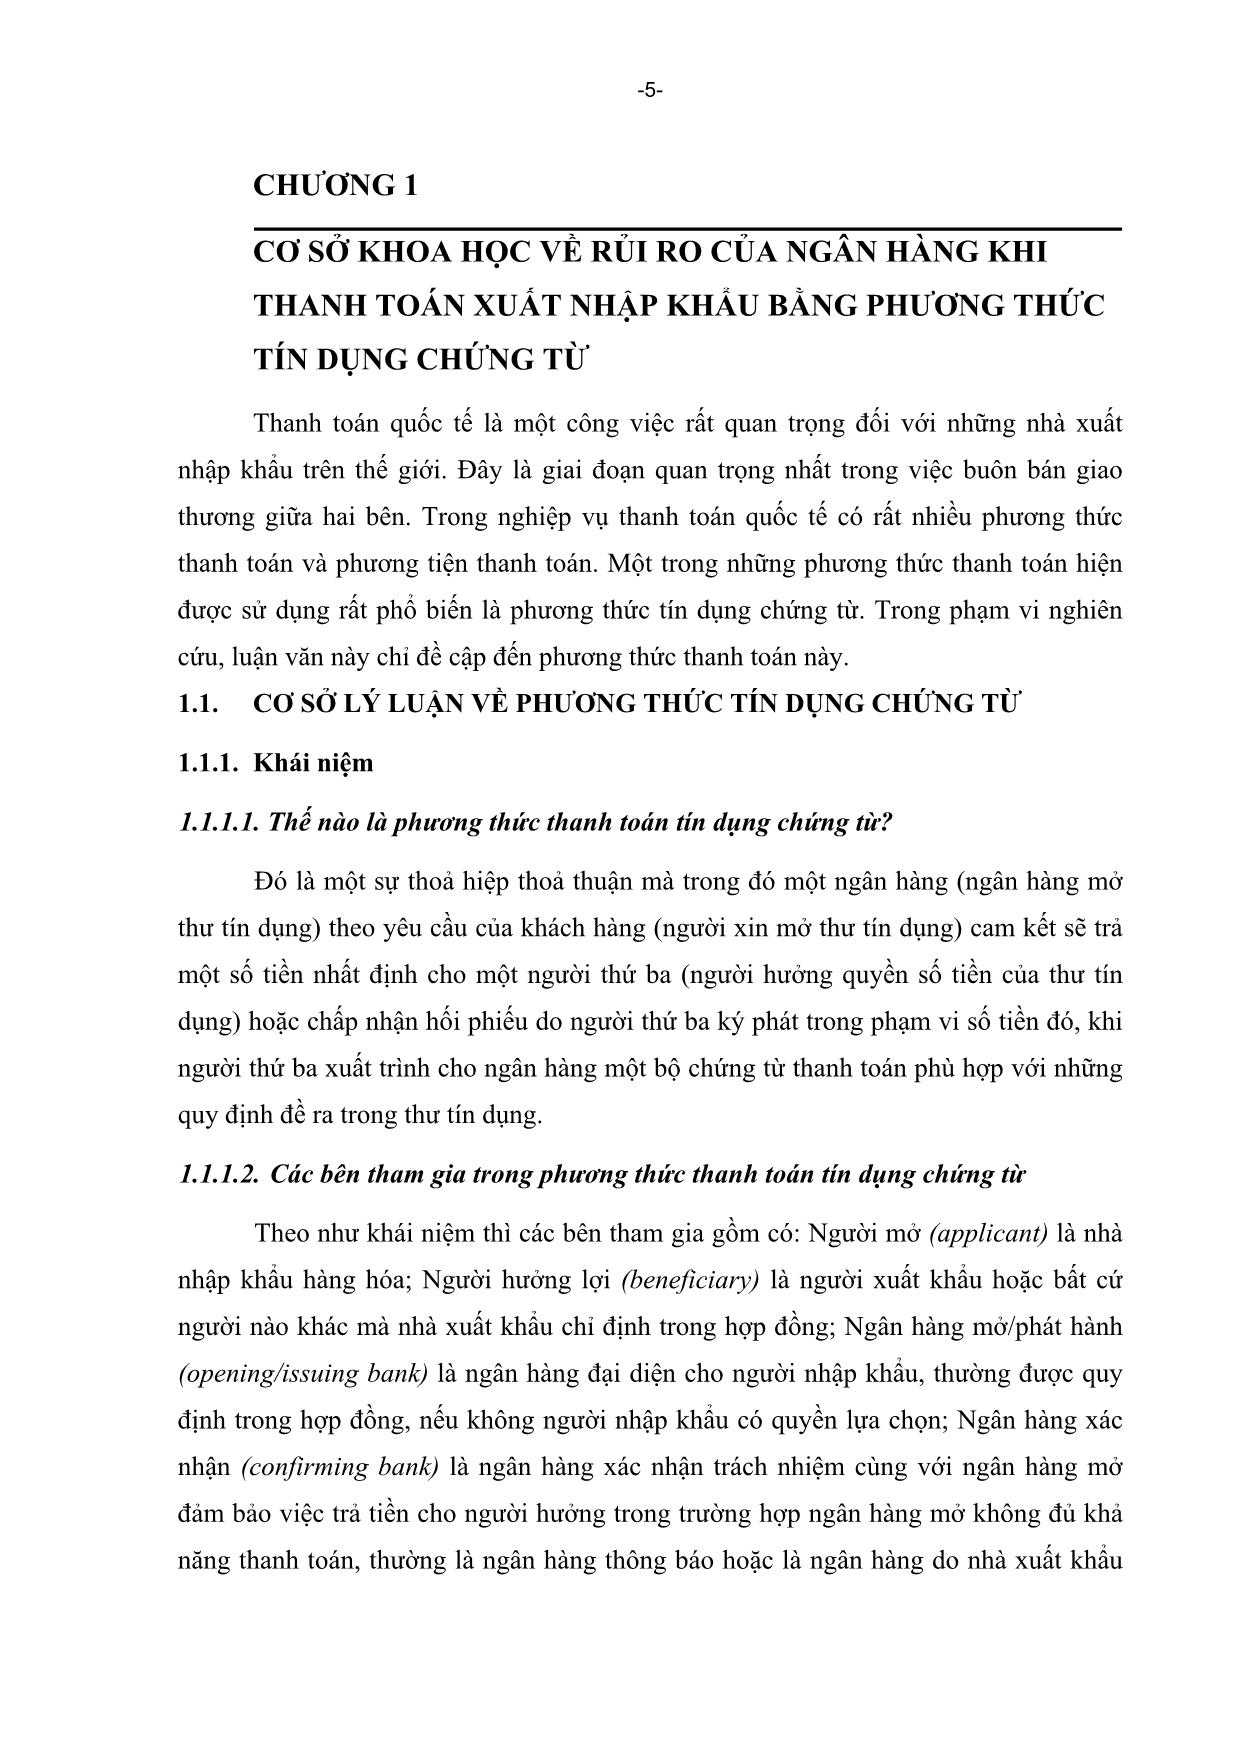 Luận văn Một số biện pháp phòng ngừa rủi ro trong phương thức tín dụng chứng từ tại ngân hàng đầu tư và phát triển Việt Nam trang 5